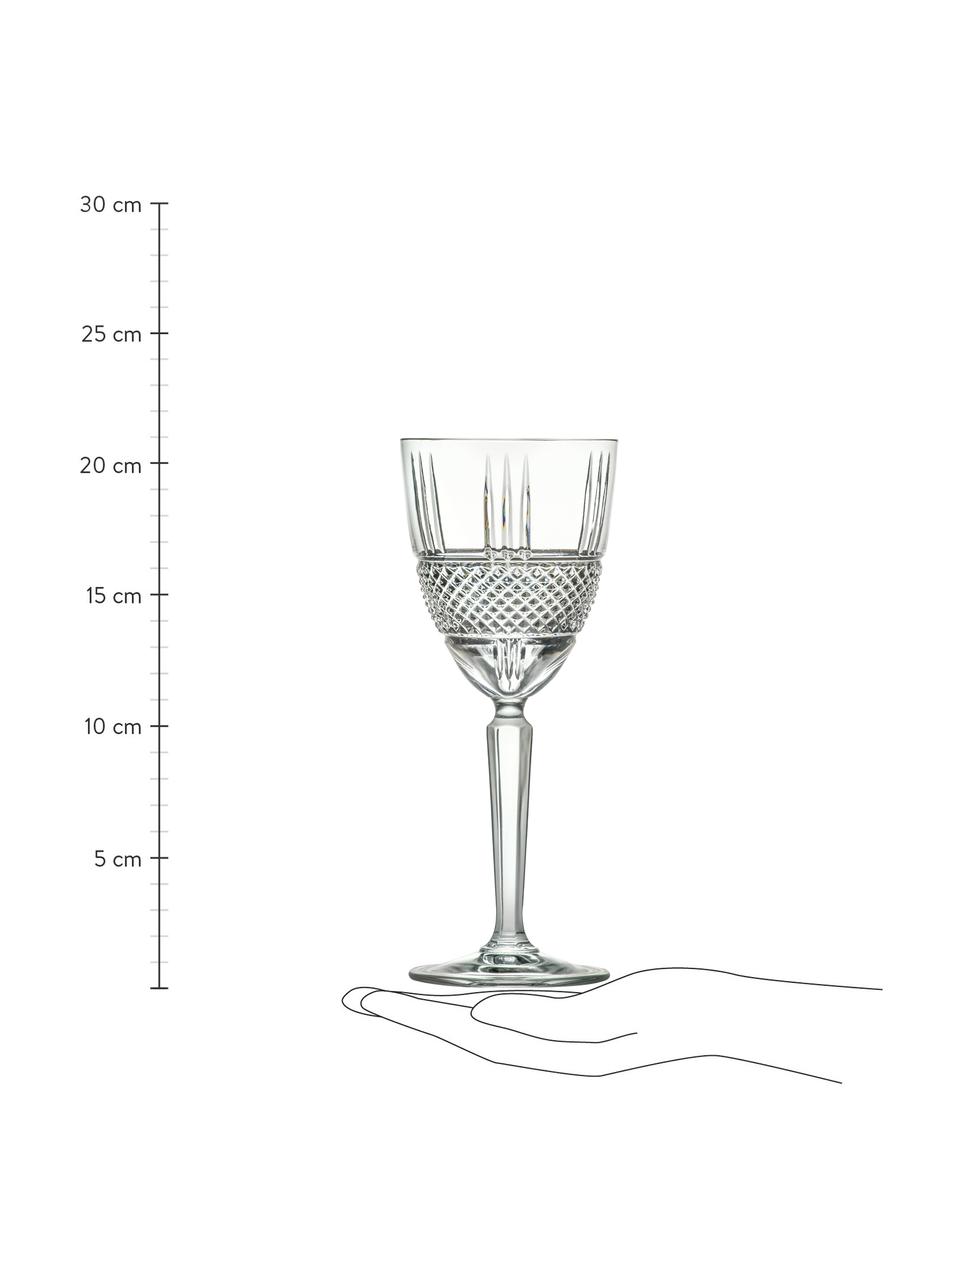 Kristall-Weingläser Brillante mit Relief, 6 Stück , Kristallglas, Transparent, Ø 9 x H 21 cm, 300 ml